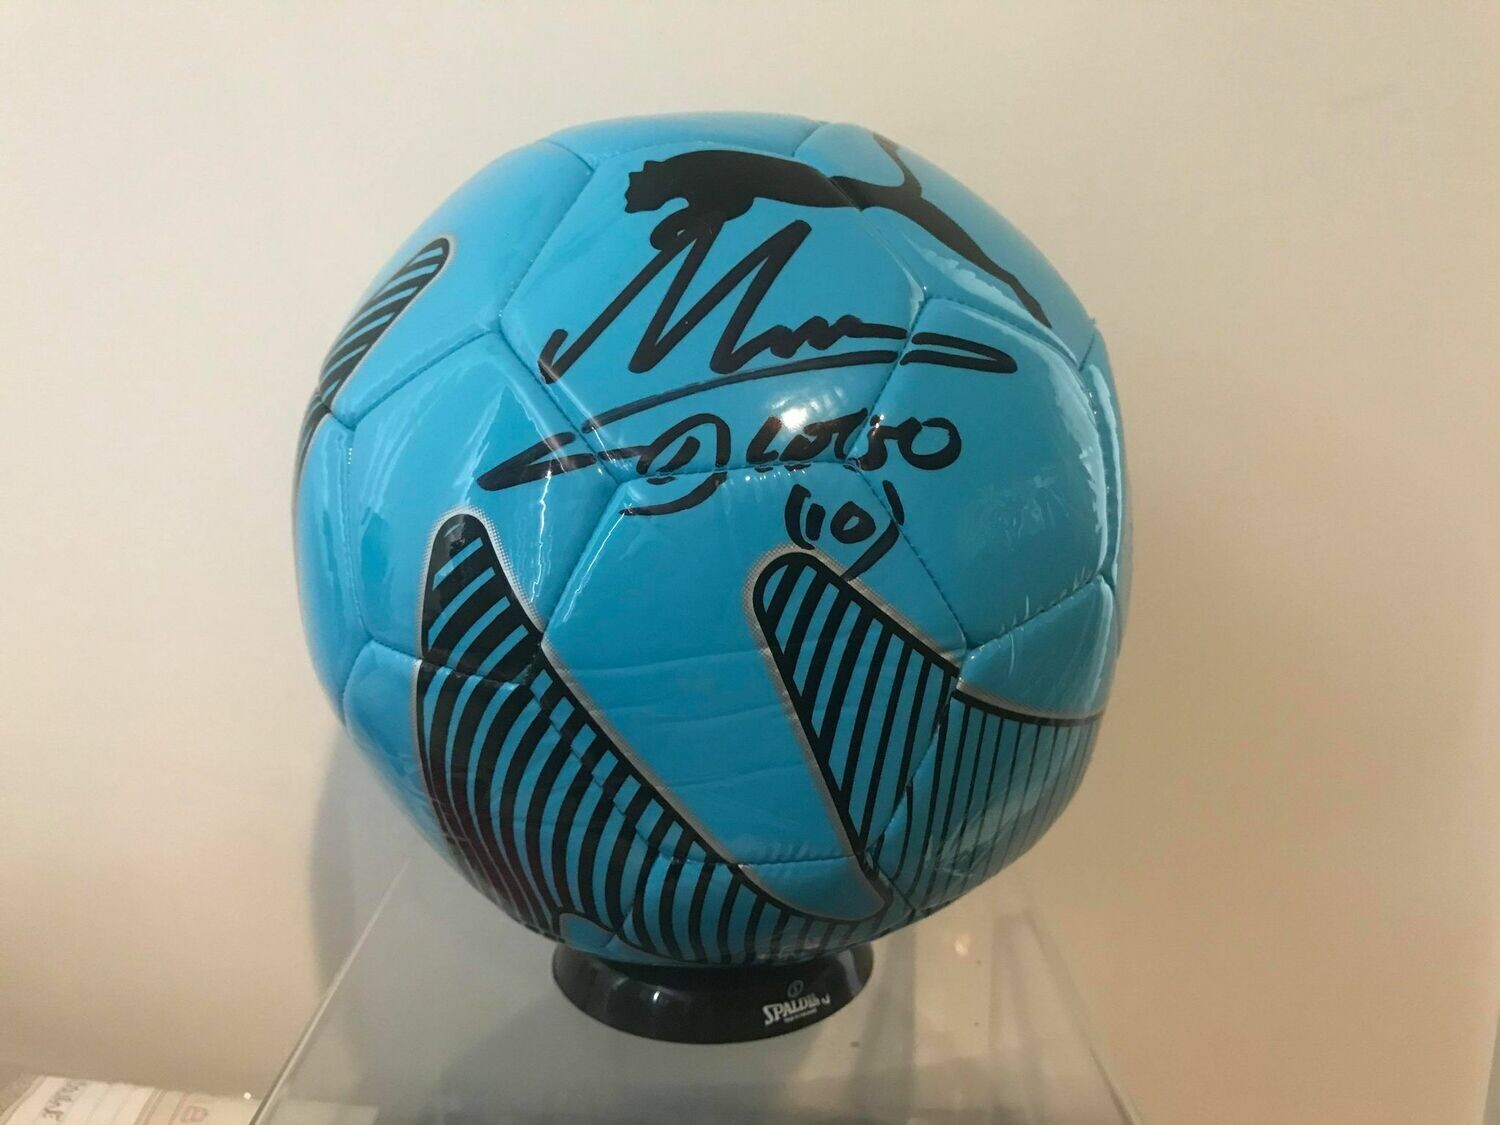 Pallone Autografato Diego Armando Maradona Signed Diego Pibe D Oro Maradona Ball Signed with COA certificate of authenticity Spedizione Gratis Shipping Free